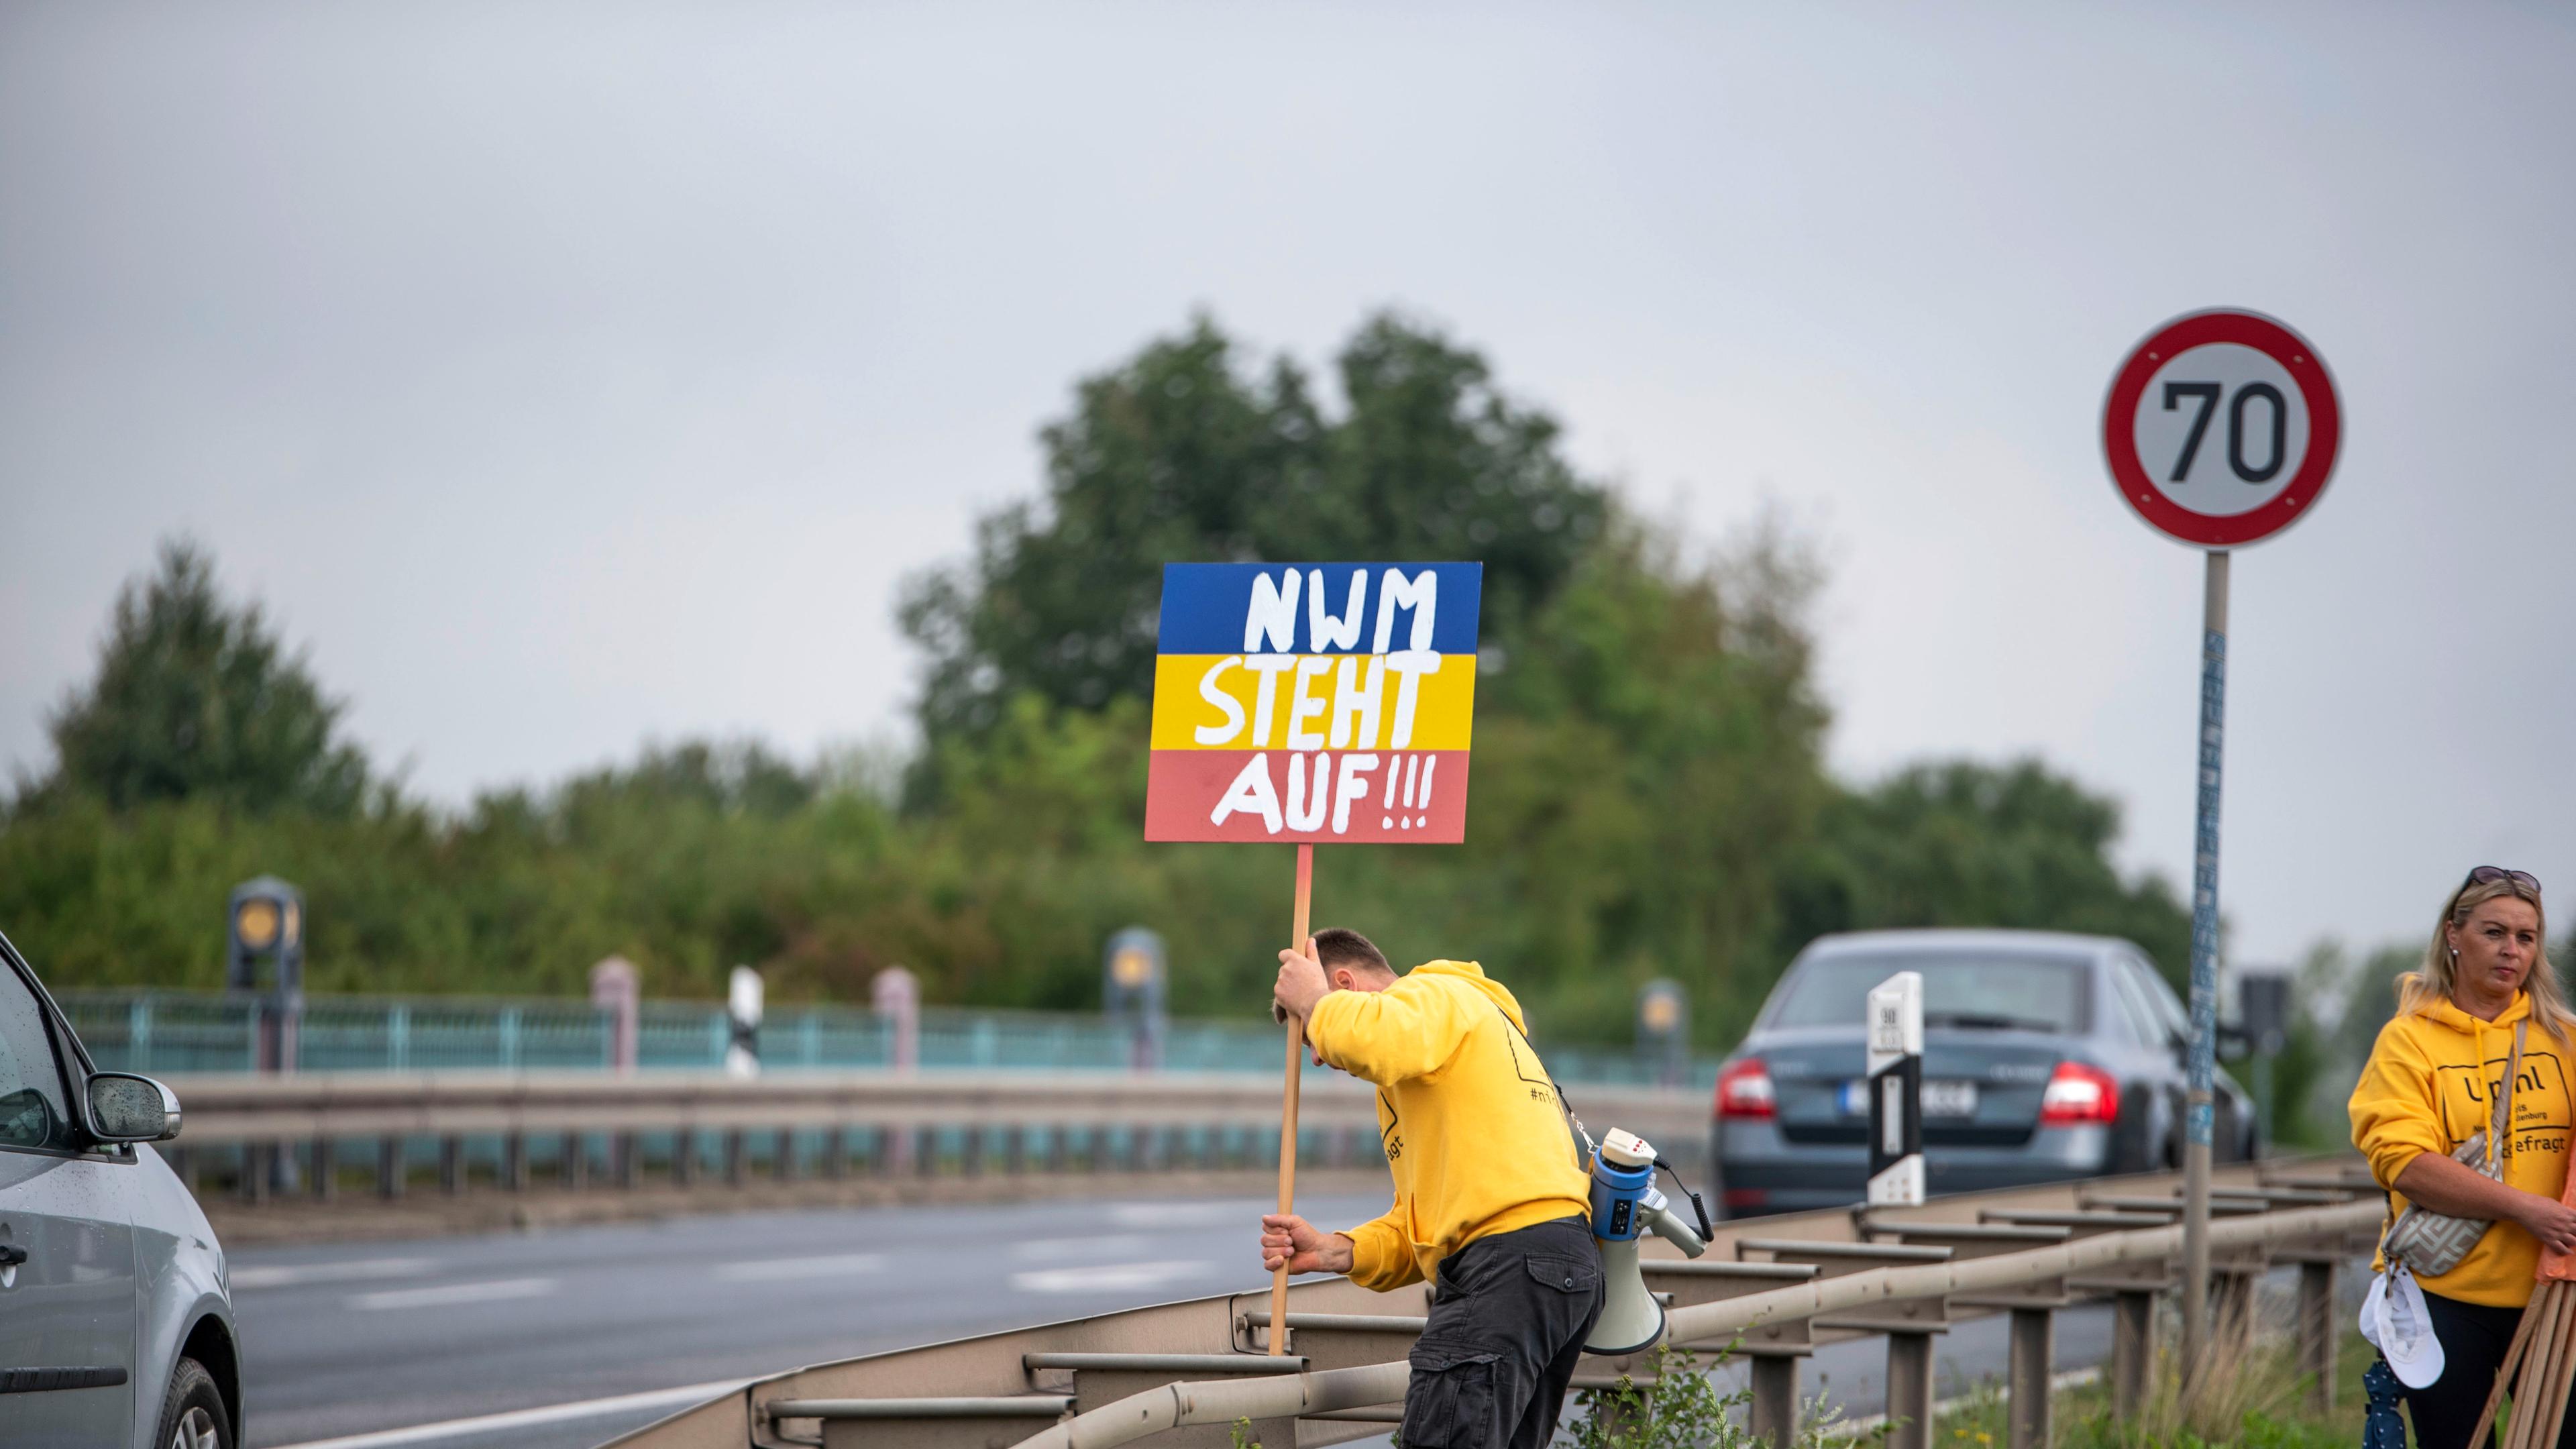 Mecklenburg-Vorpommern, Upahl: Ein Mann steckt an der Hauptstraße ein Schild mit der Aufschrift "NWM steht auf!!!" an eine Leitplanke als Protest gegen den Bau einer Flüchtlingsunterkunft in Upahl im Landkreis Nordwestmecklenburg (NWM).